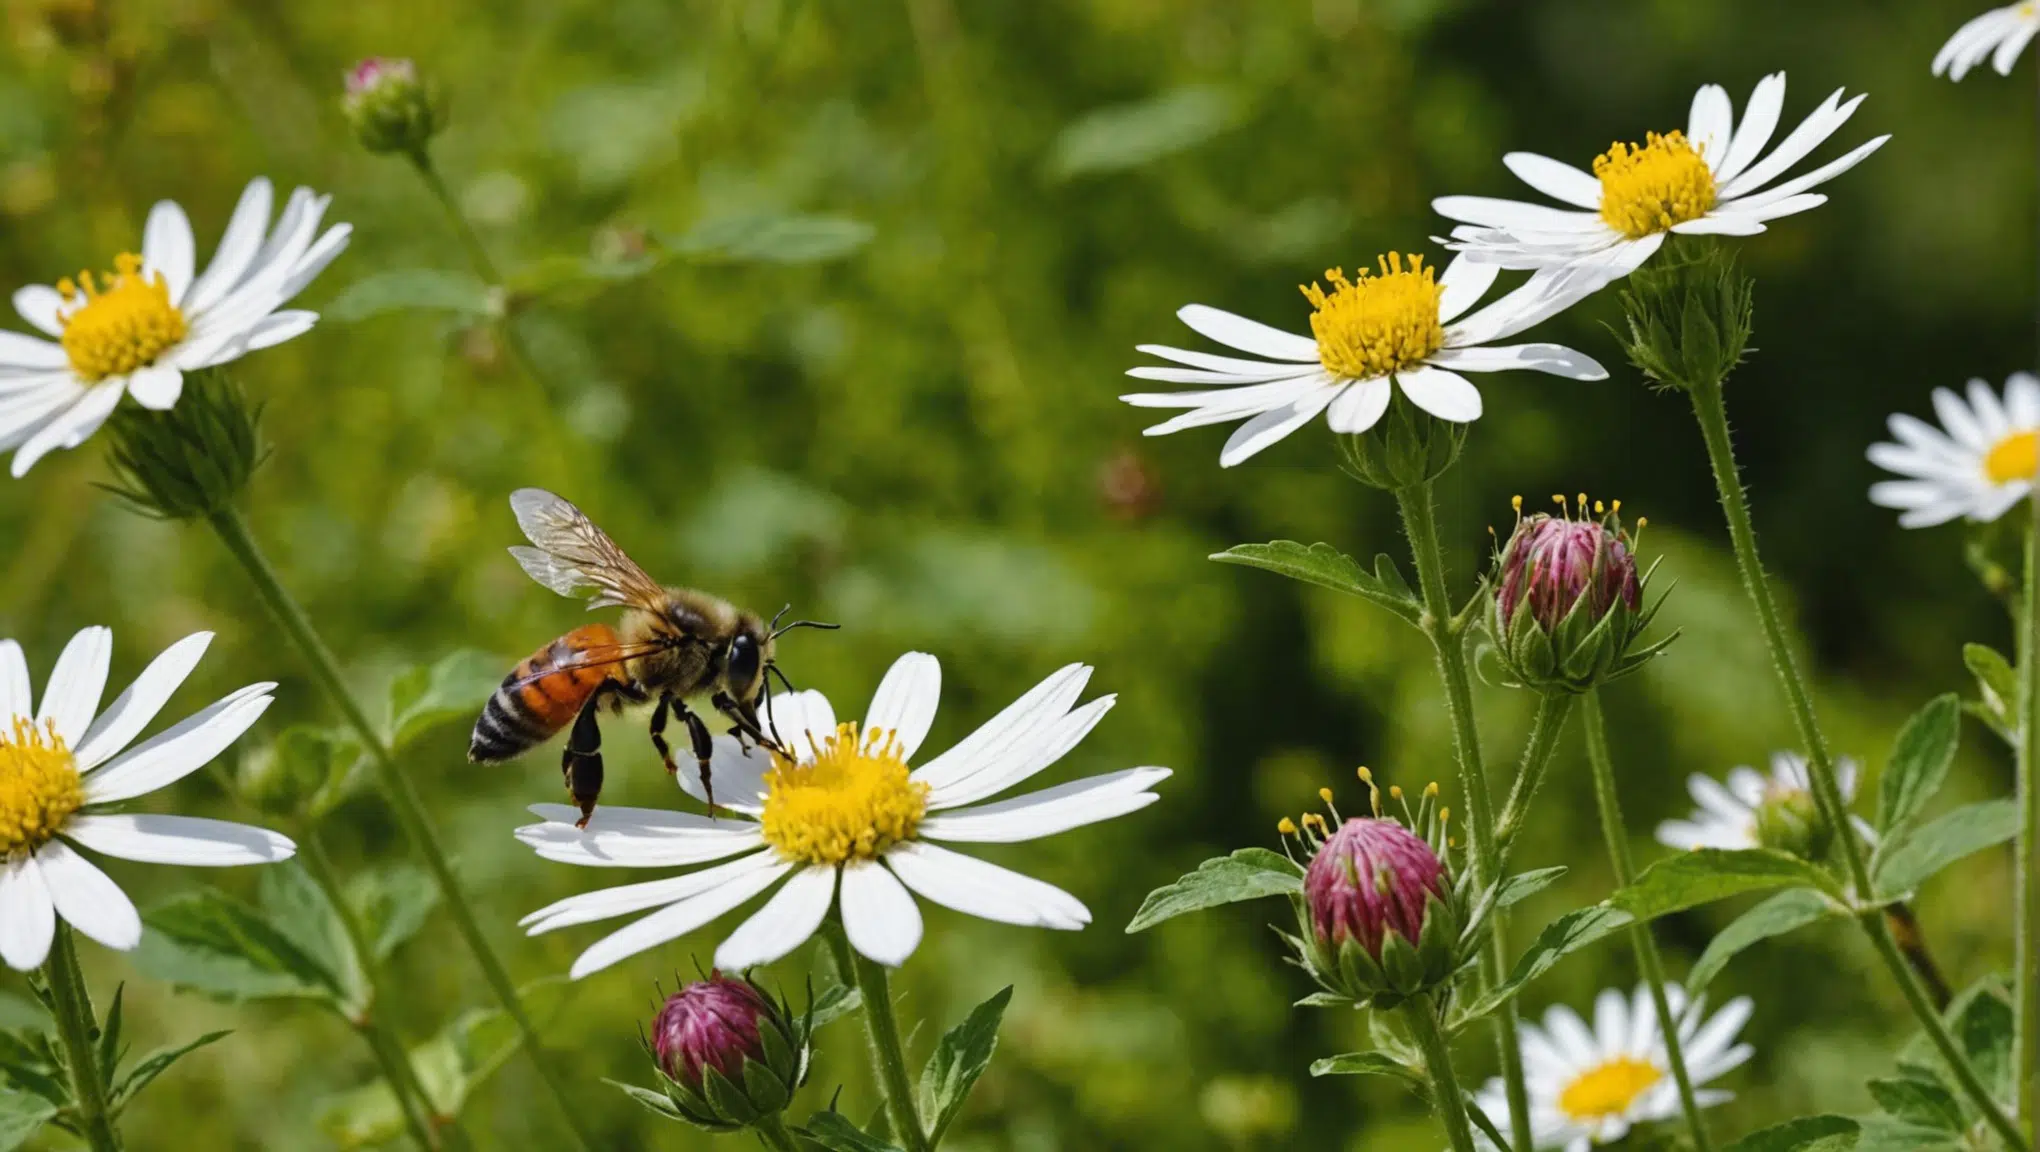 découvrez des conseils pratiques pour optimiser la pollinisation dans votre jardin et favoriser la croissance de vos plantes. astuces et stratégies pour attirer les abeilles et autres pollinisateurs naturels.